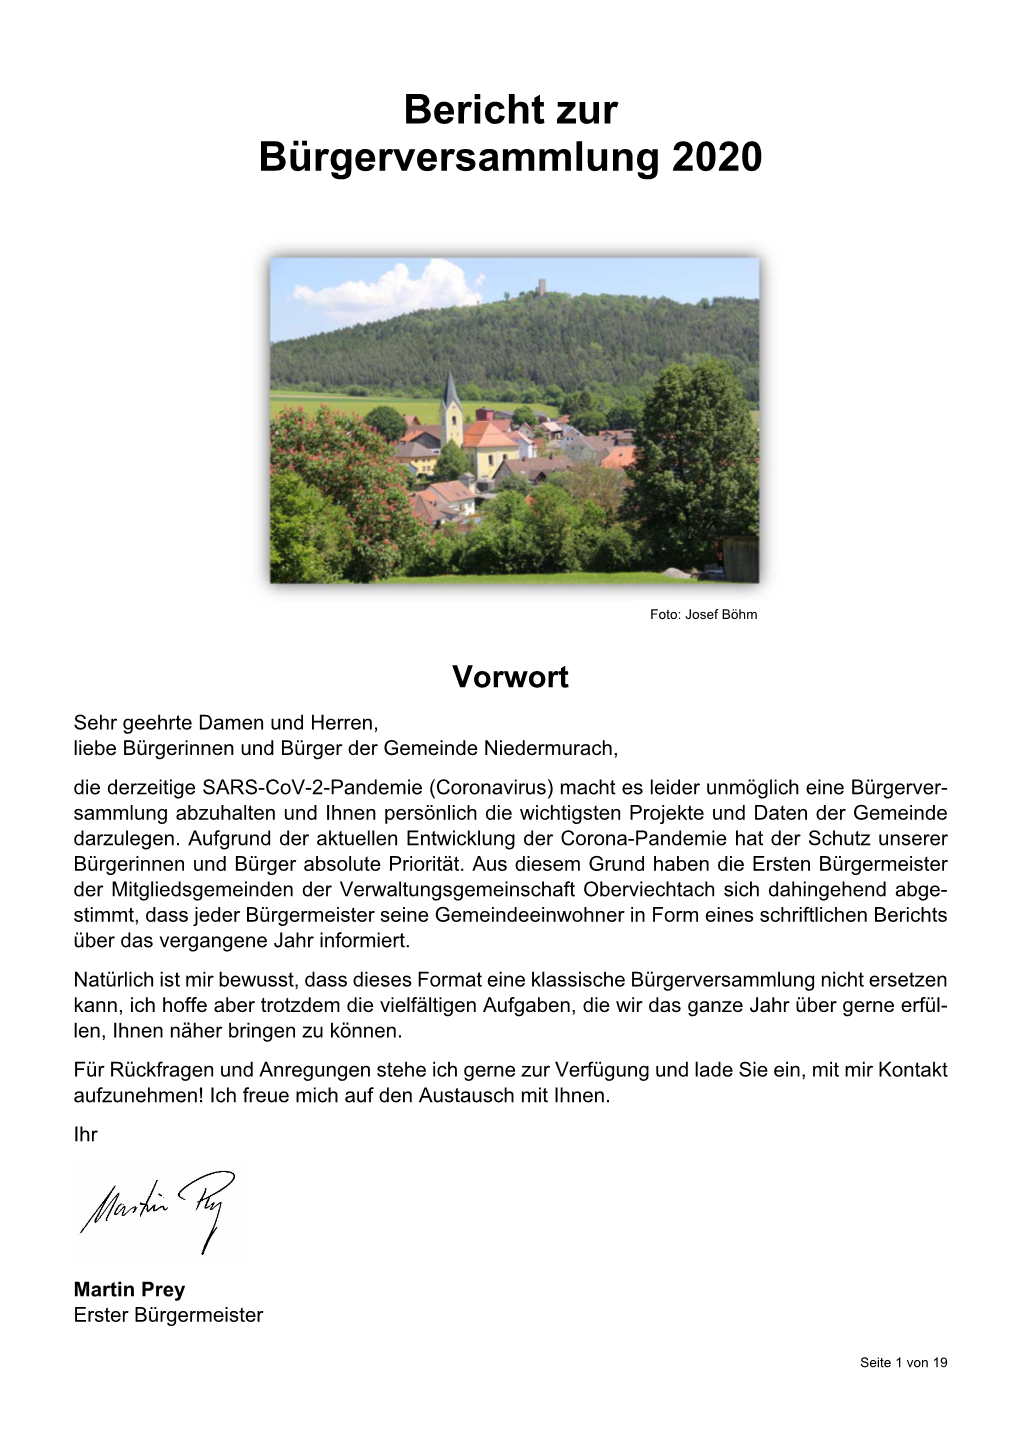 Bericht Zur Bürgerversammlung 2020 Gemeinde Niedermurach